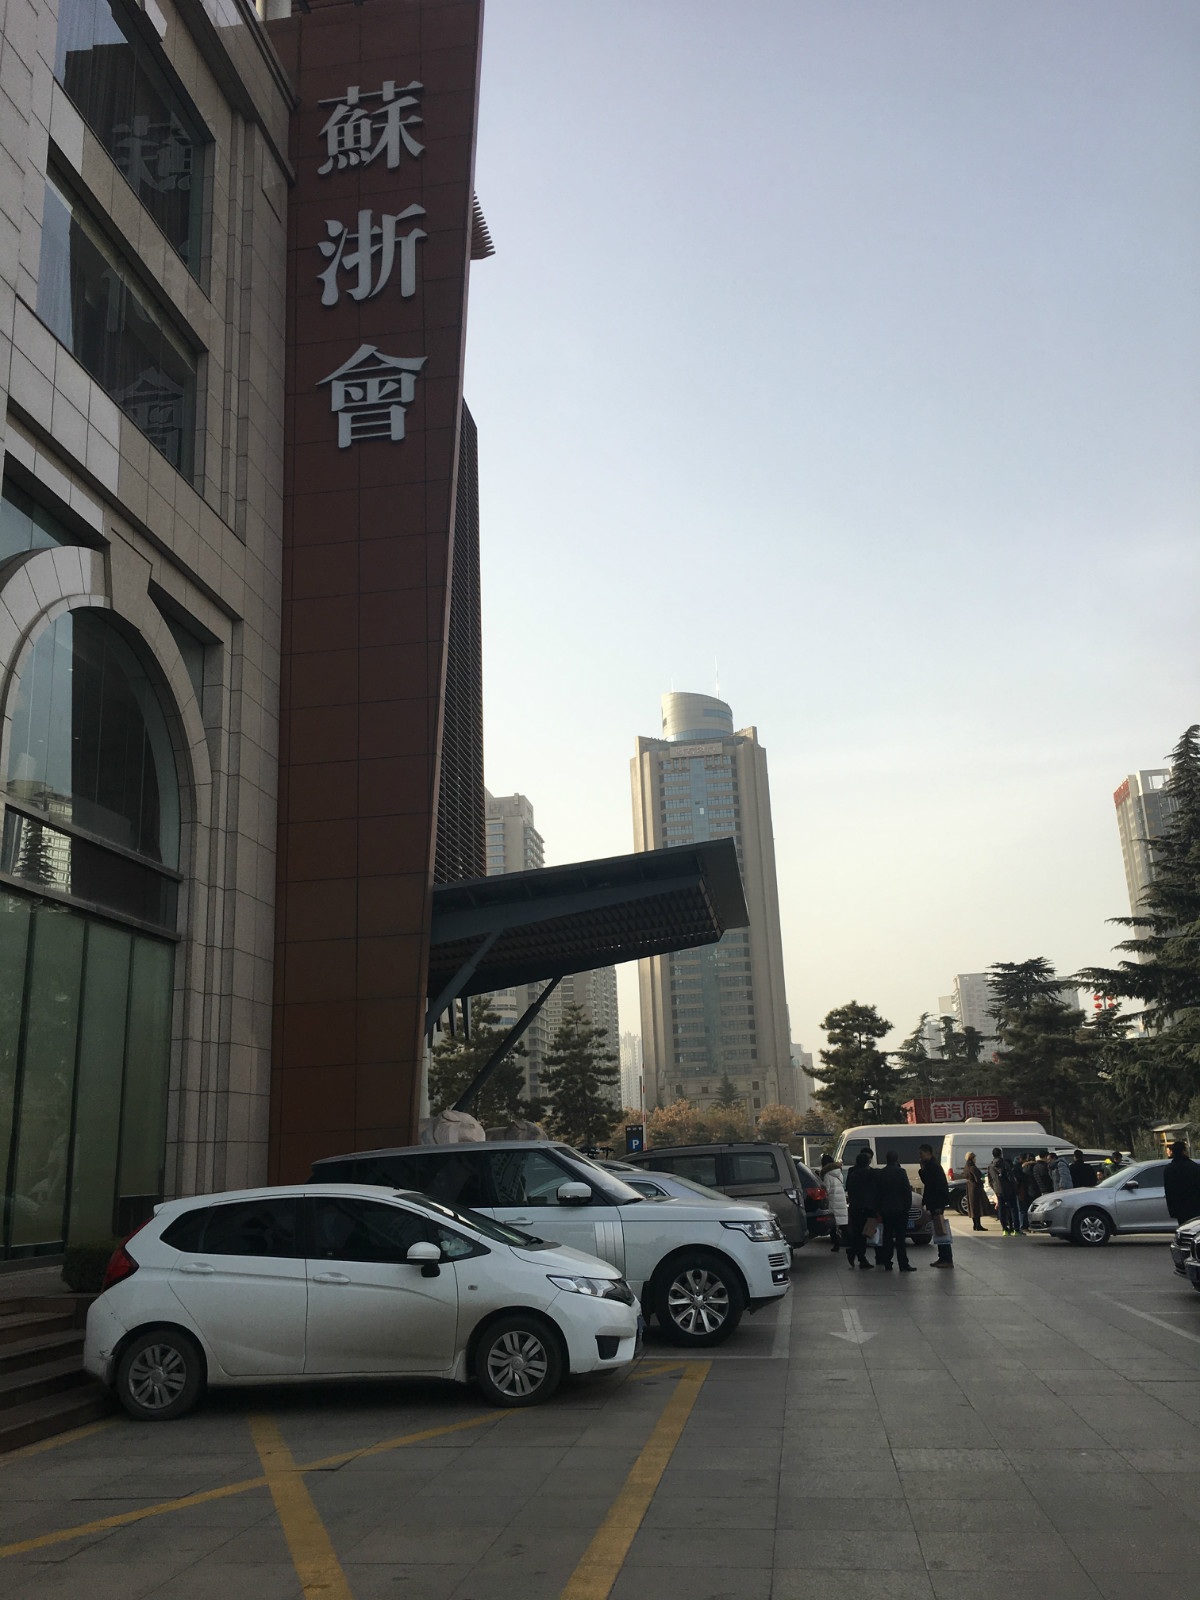 “苏浙会”中式餐饮连锁品牌无线覆盖方案